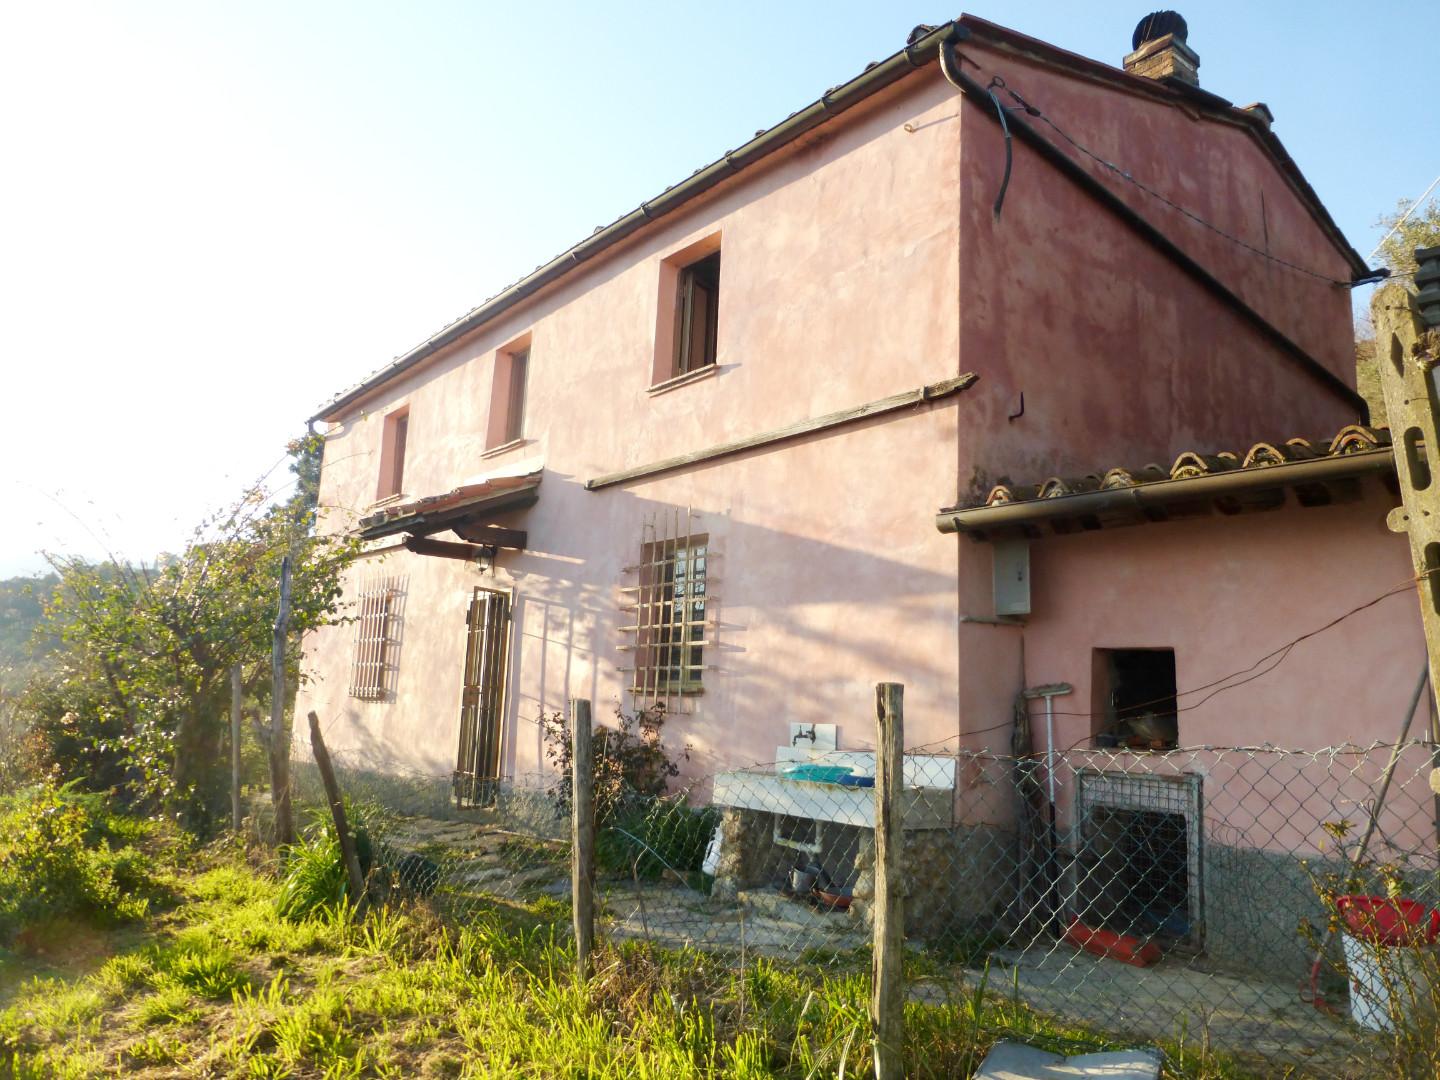 Rustico / Casale in vendita a Vicopisano, 6 locali, prezzo € 175.000 | PortaleAgenzieImmobiliari.it